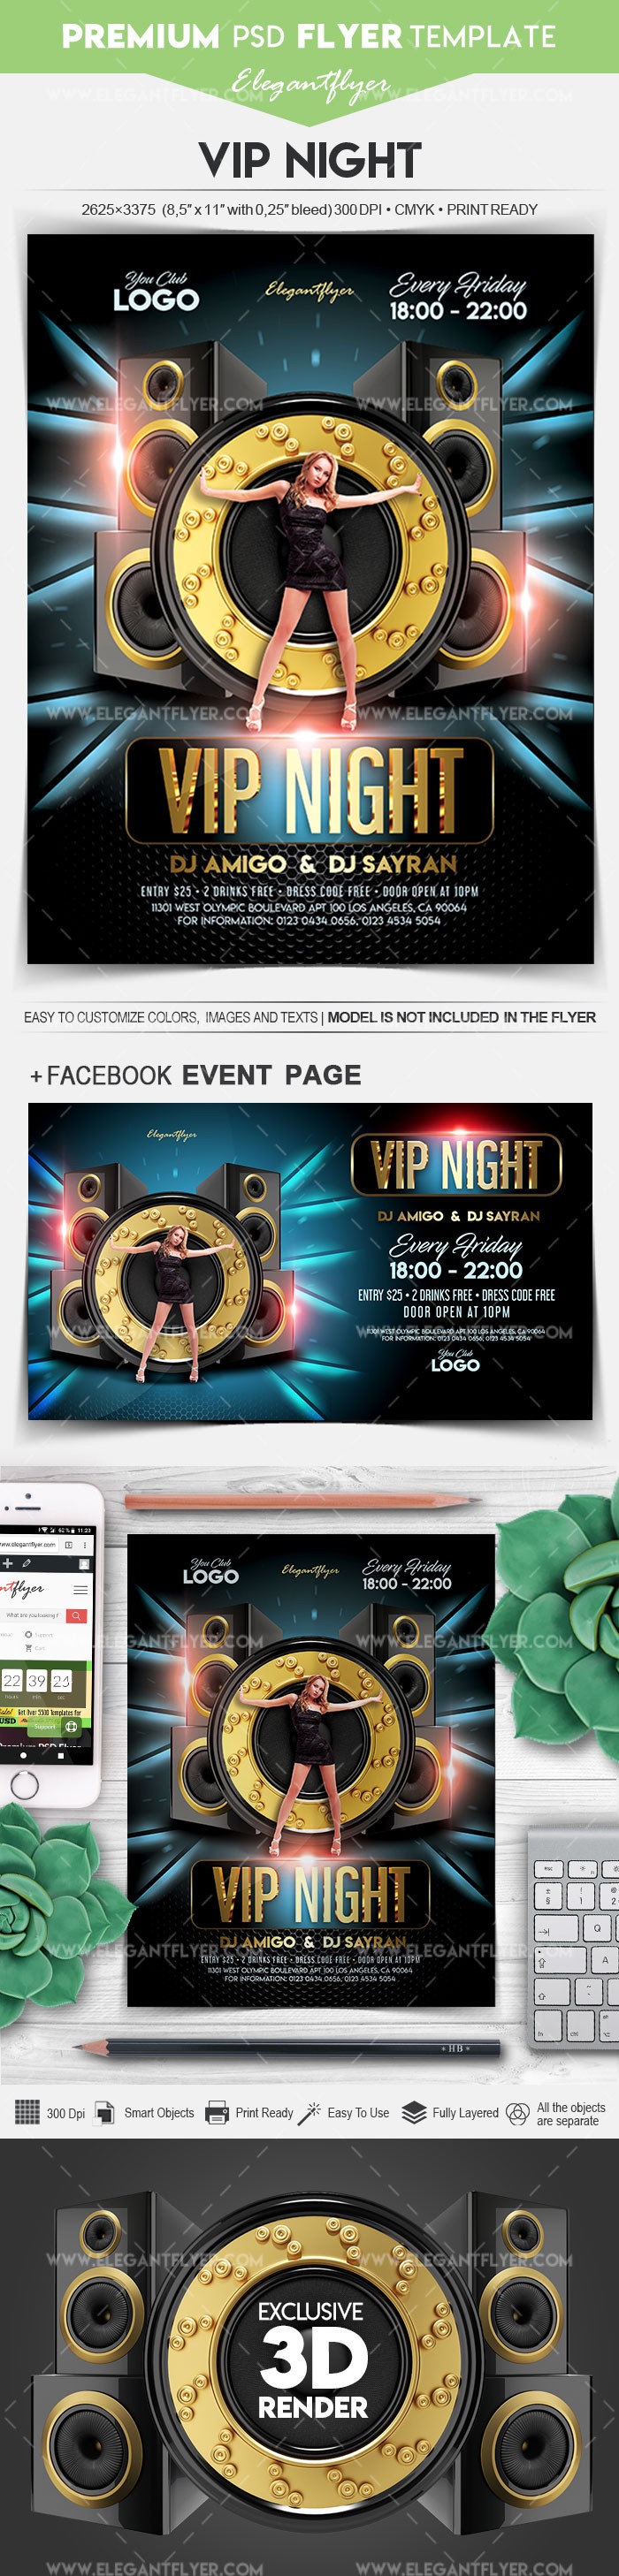 Noite VIP by ElegantFlyer